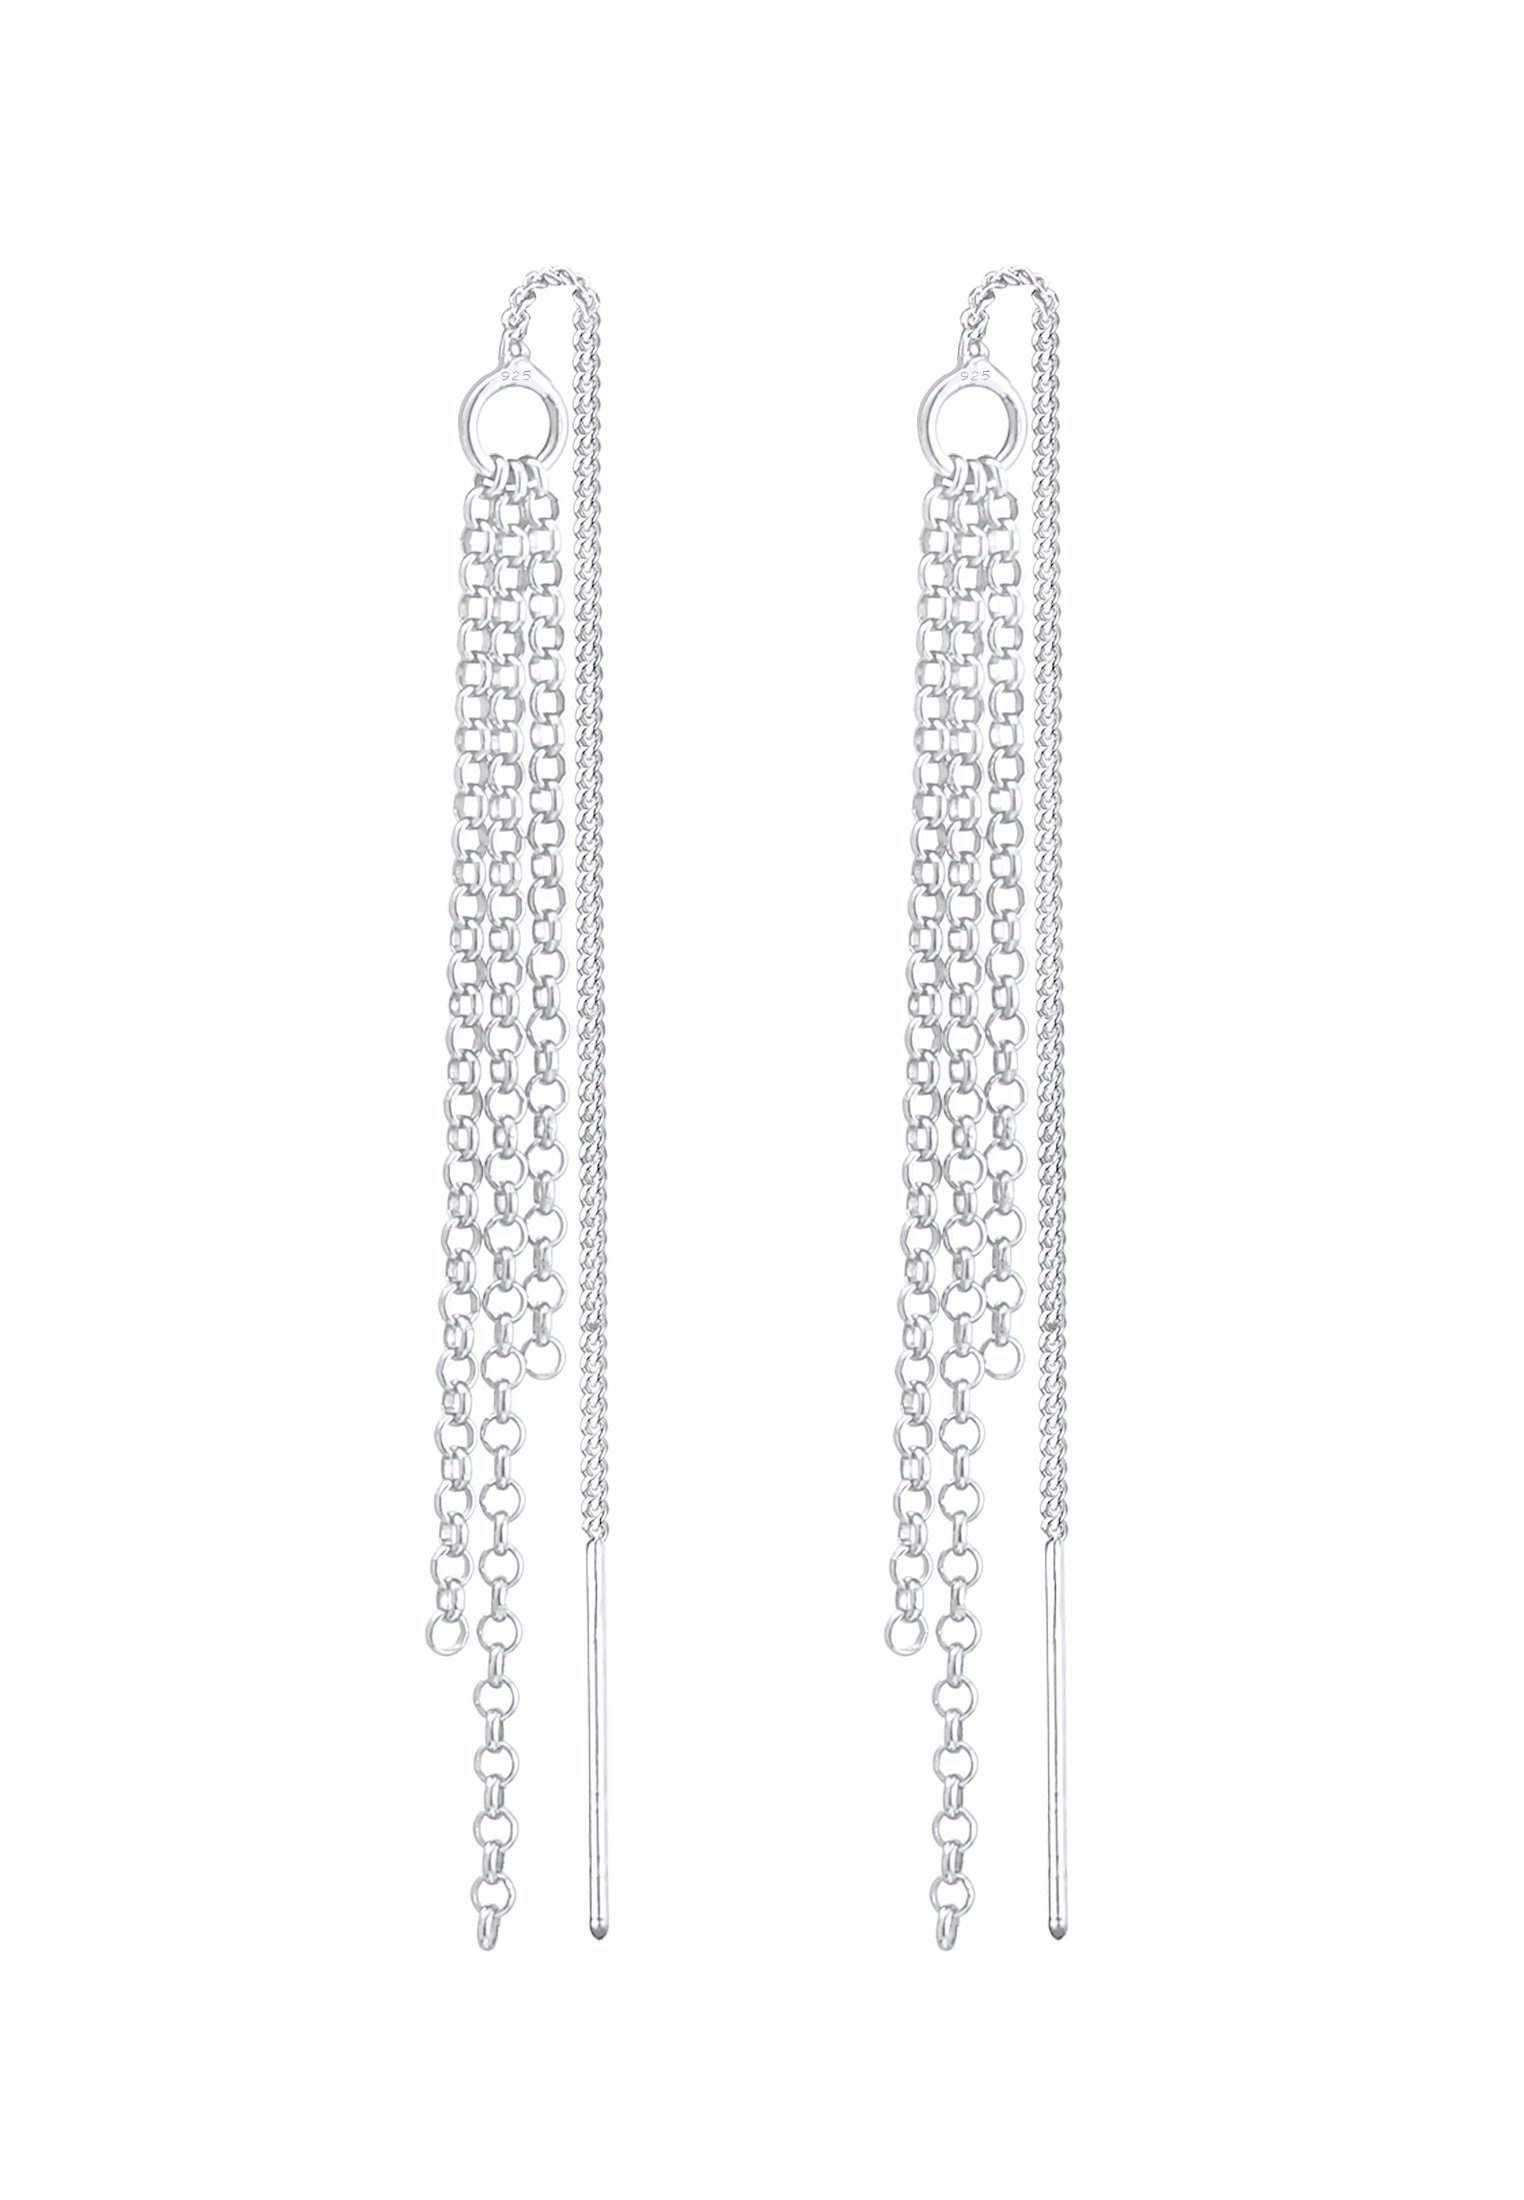 Elegant Style Ohrhänger Paar Silber 925 Ketten Durchzieher Elli